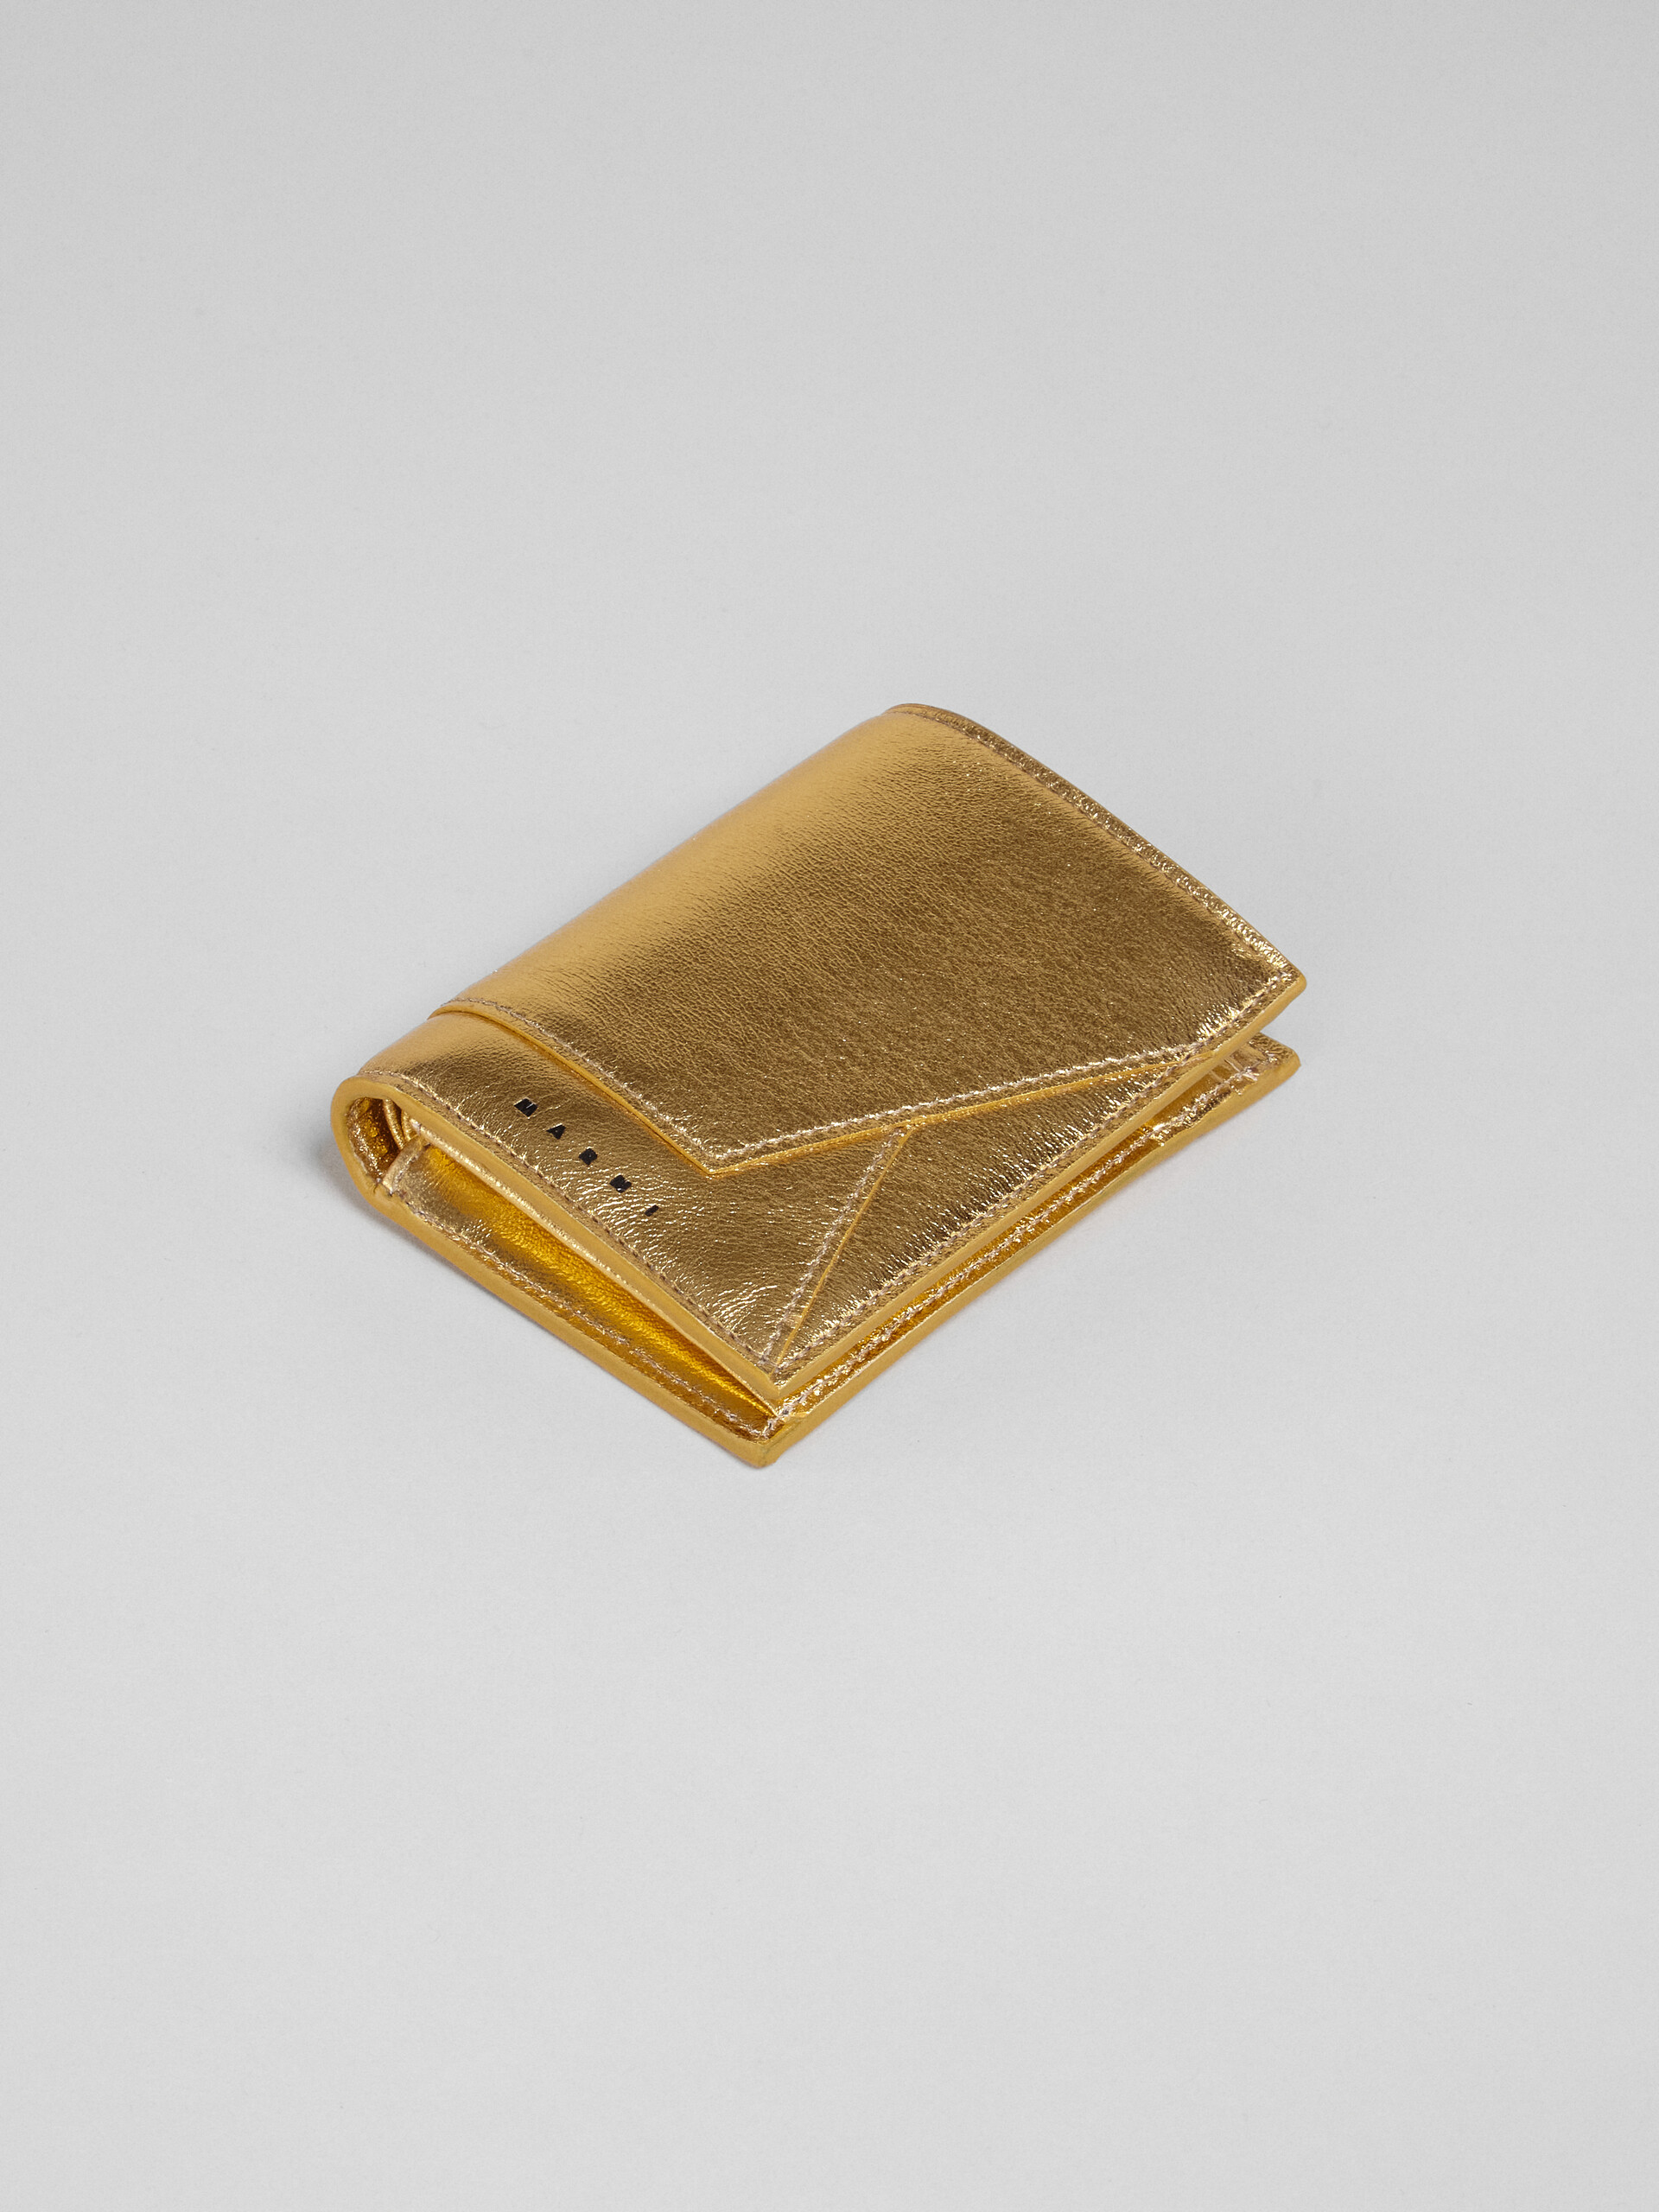 ゴールドメタリック調 ナッパレザー二つ折りウォレット - 財布 - Image 4